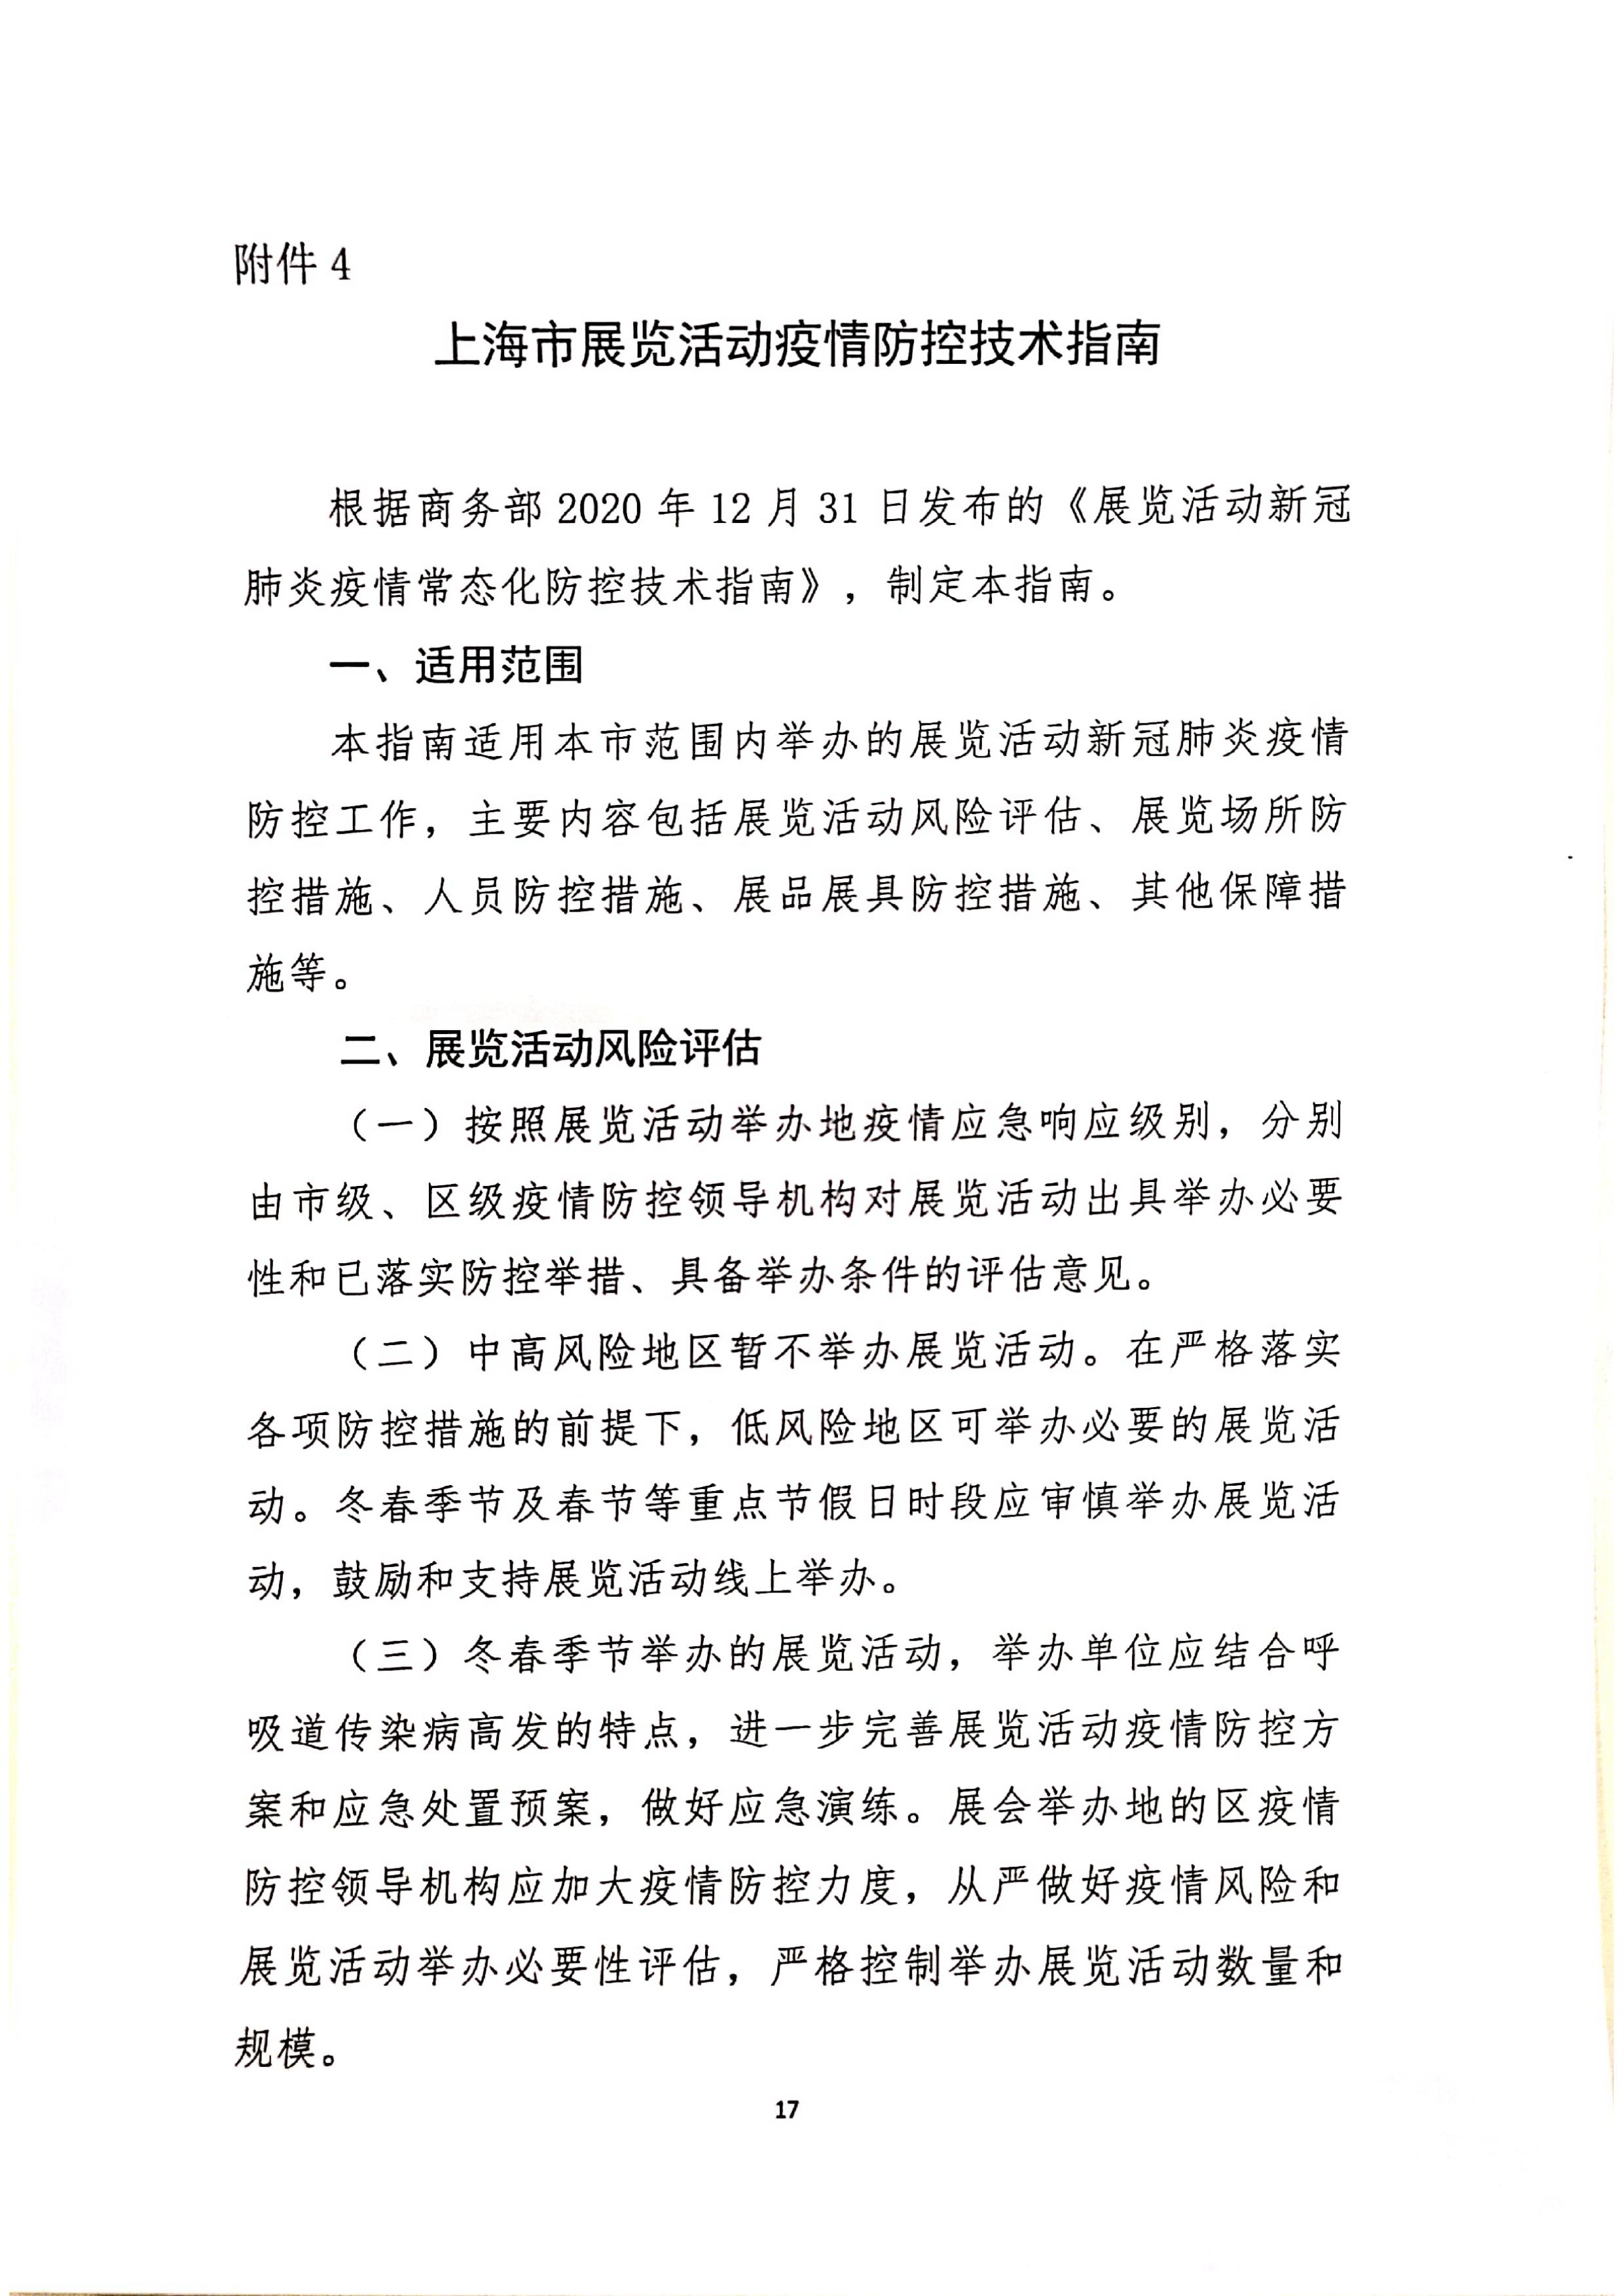 发文4号-关于印发《上海市商场、超市疫情防控技术指南》等4个指南的通知_17.jpg